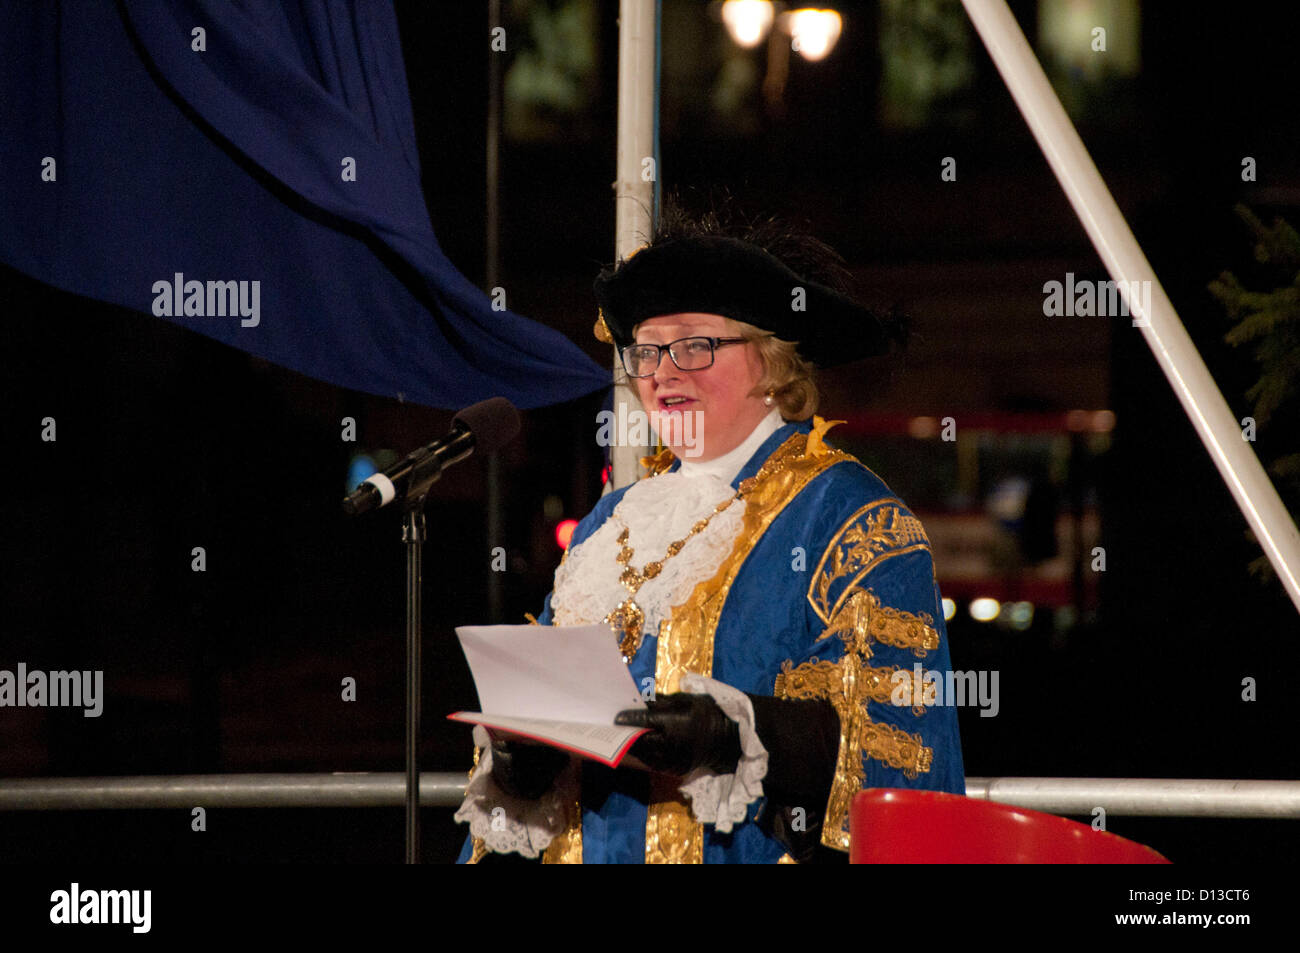 Londres, Royaume-Uni. 06/12/12. Le maire de la ville de Westminster, la Rcbd Angela Harvey, assiste à la cérémonie d'éclairage de l'arbre de Noël d'Oslo à Trafalgar Square. Banque D'Images